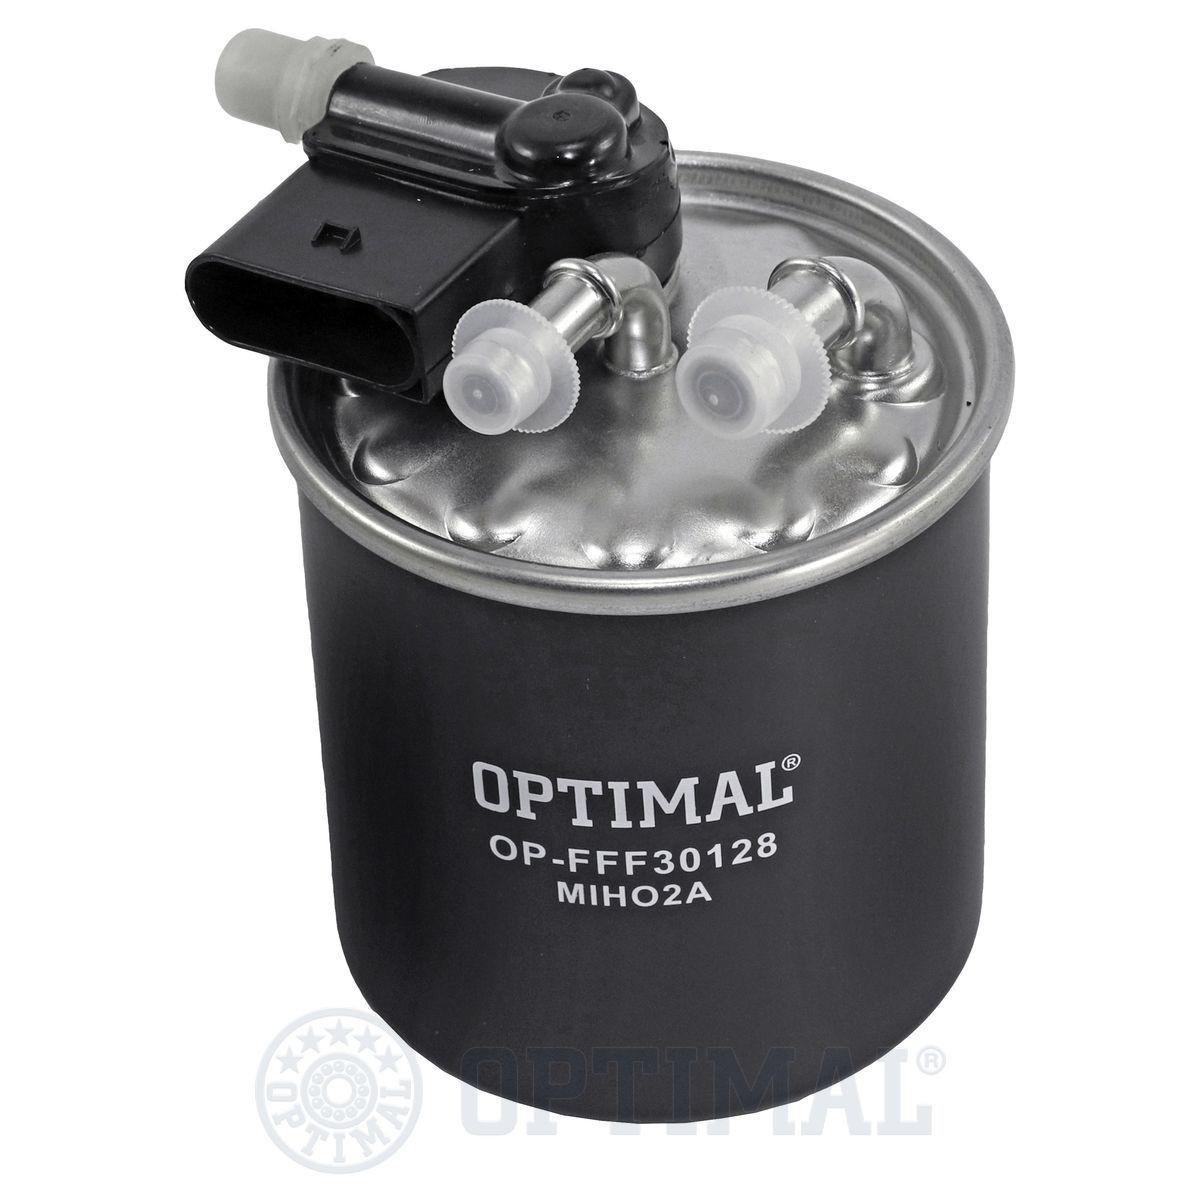 OPTIMAL OP-FFF30128 Fuel filter 642 090 65 52